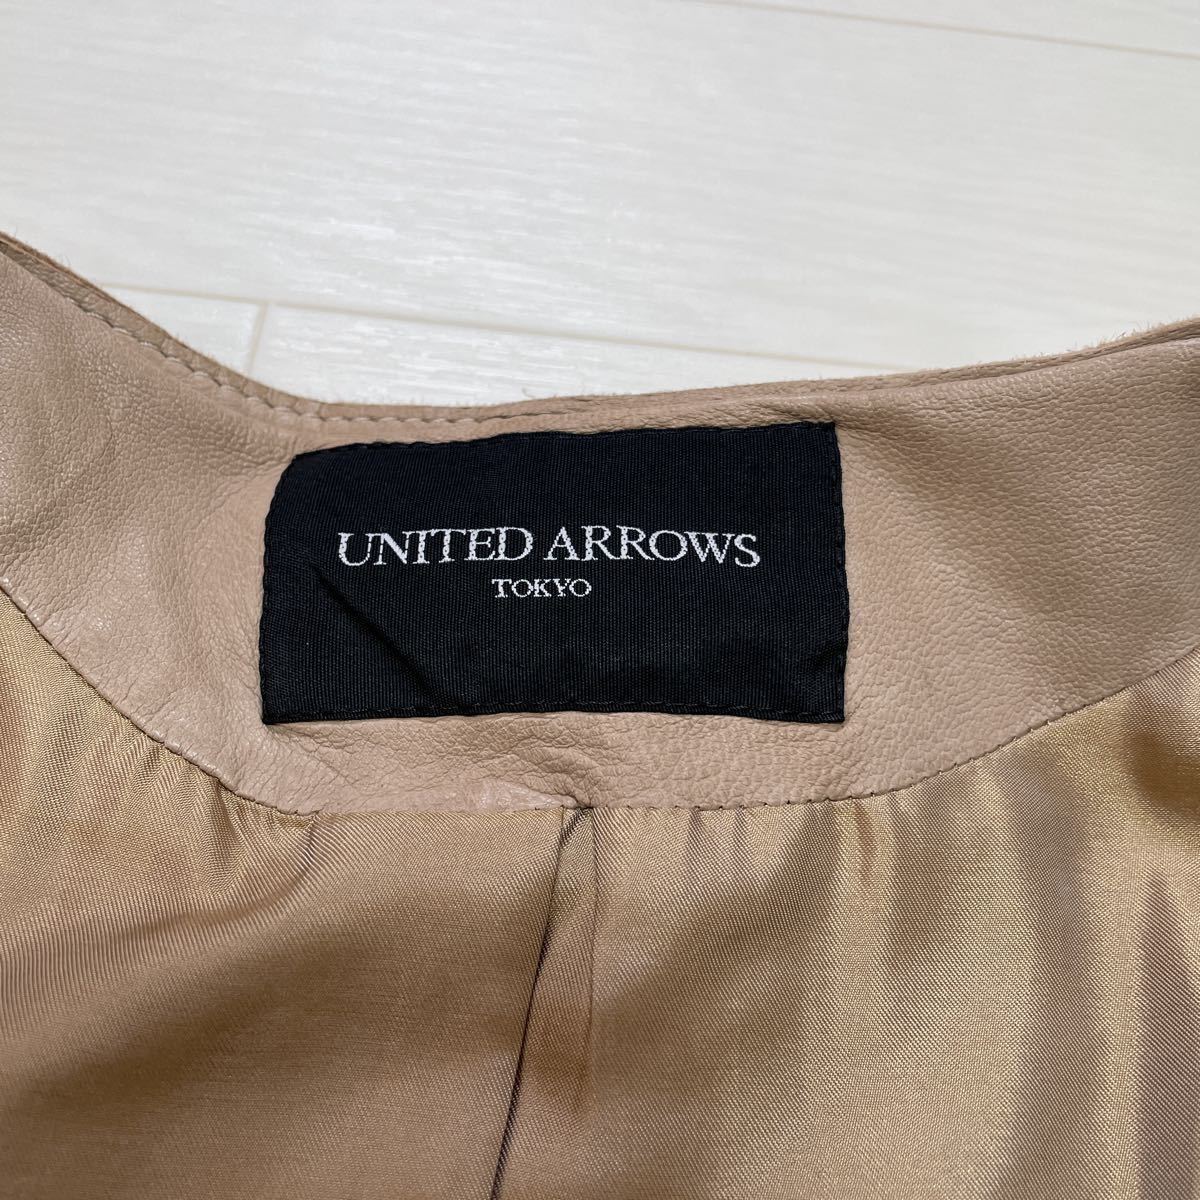 ユナイテッドアローズ UNITED ARROWS レディース レザージャケット 羊革 ライダースジャケット サイズ36_画像4